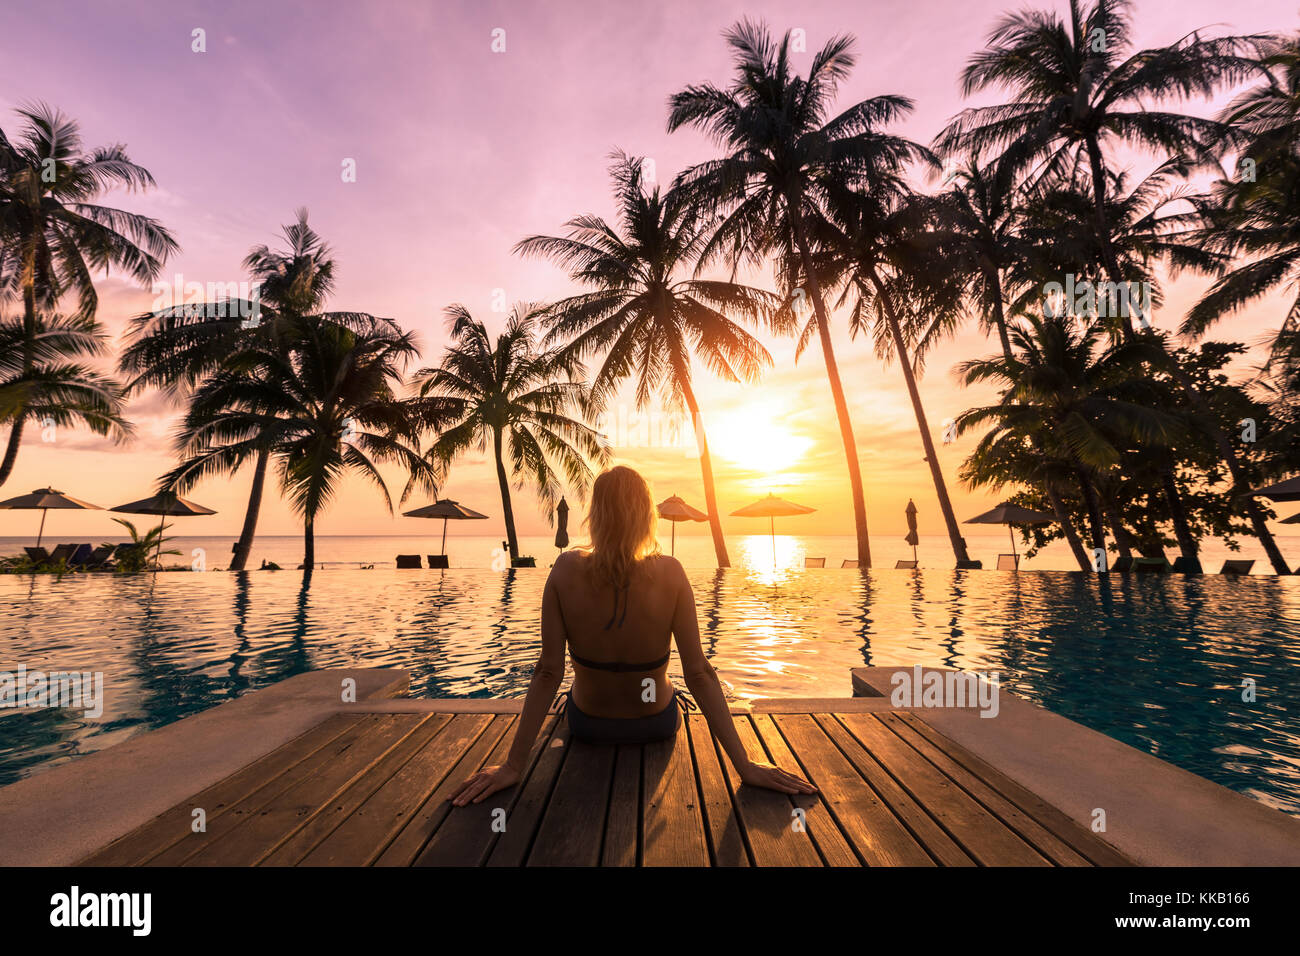 Frau am Pool in einem luxuriösen Hotel Resort direkt am Strand bei Sonnenuntergang geniessen Sie perfekten Strand Urlaub Stockfoto